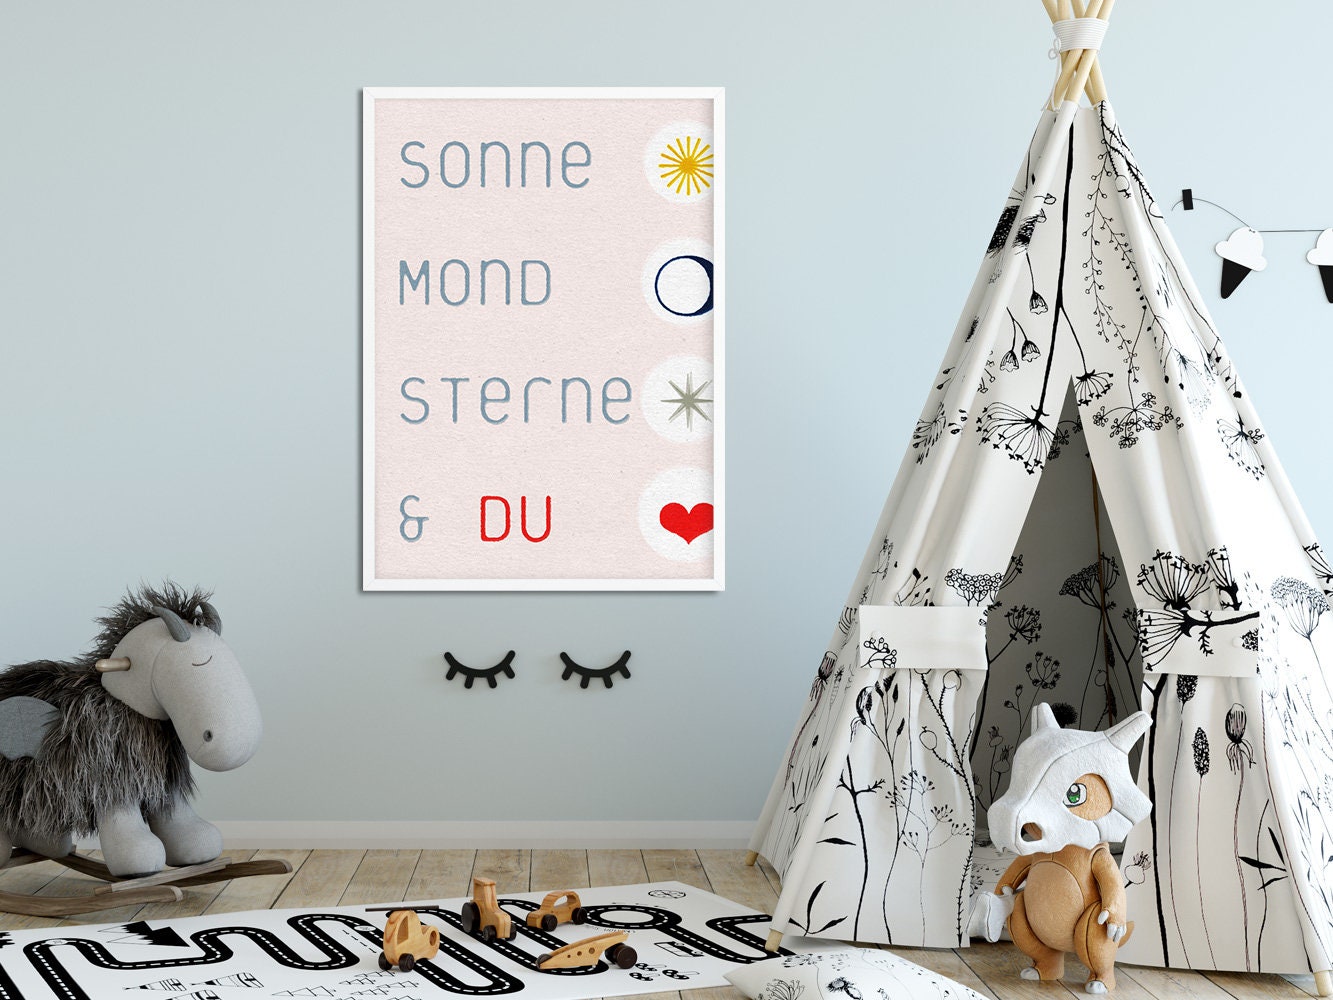 DRUCK ›Sonne, Sterne - – & DU Wa Art, 02‹ Kinderzimmerbild, Wall Mond, lazydaypaper 